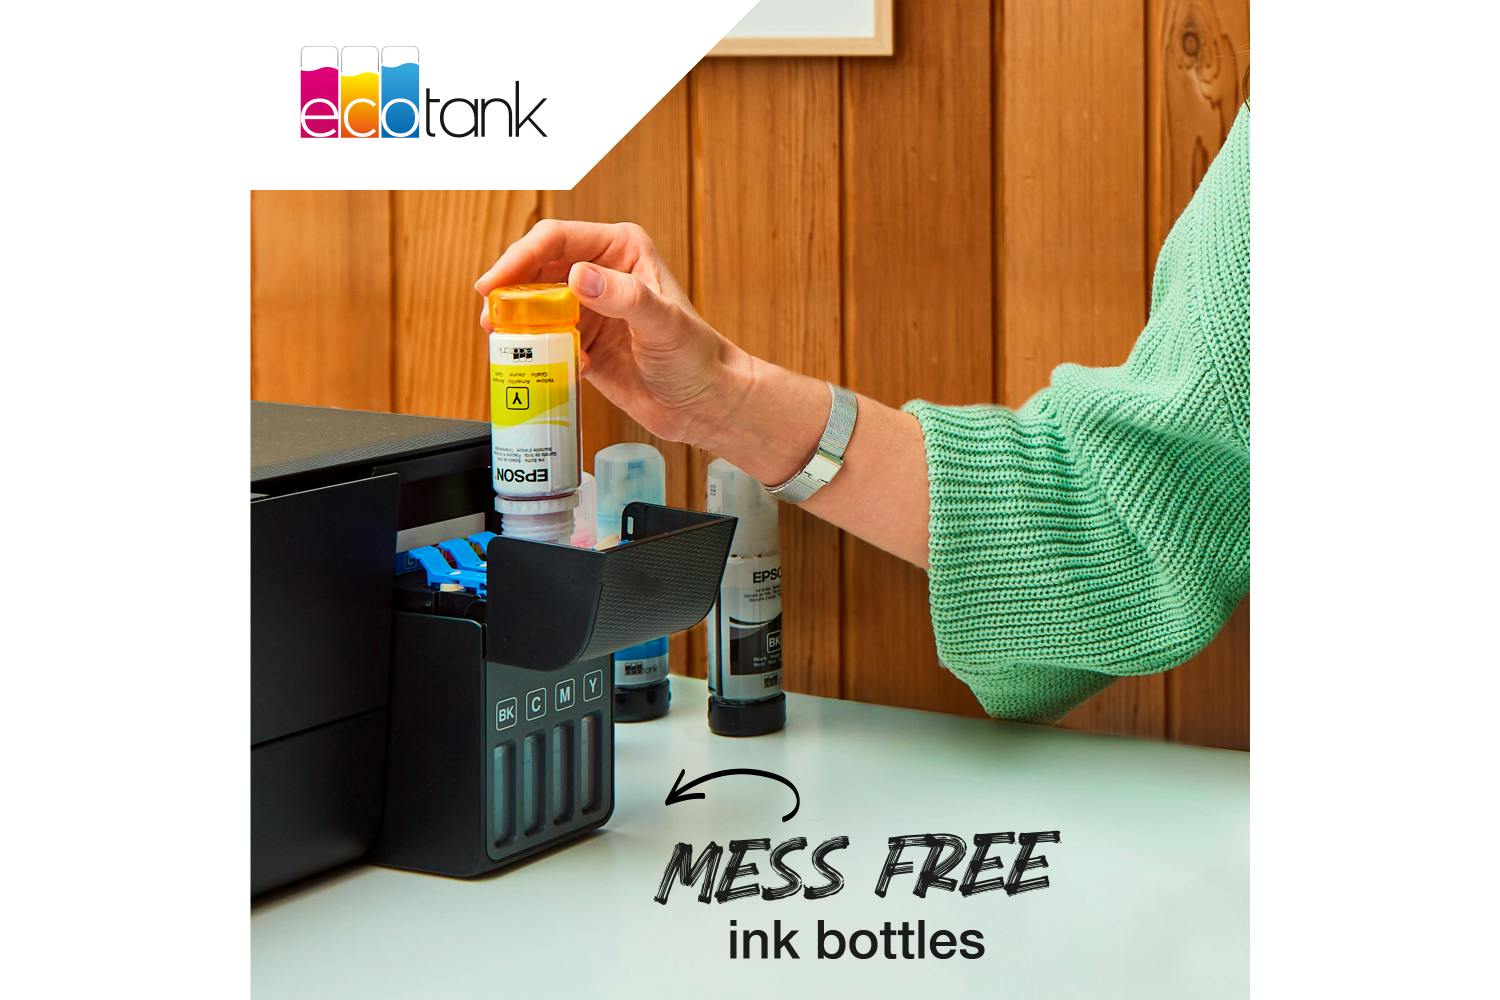 Epson 104 EcoTank Ink Bottle | Black